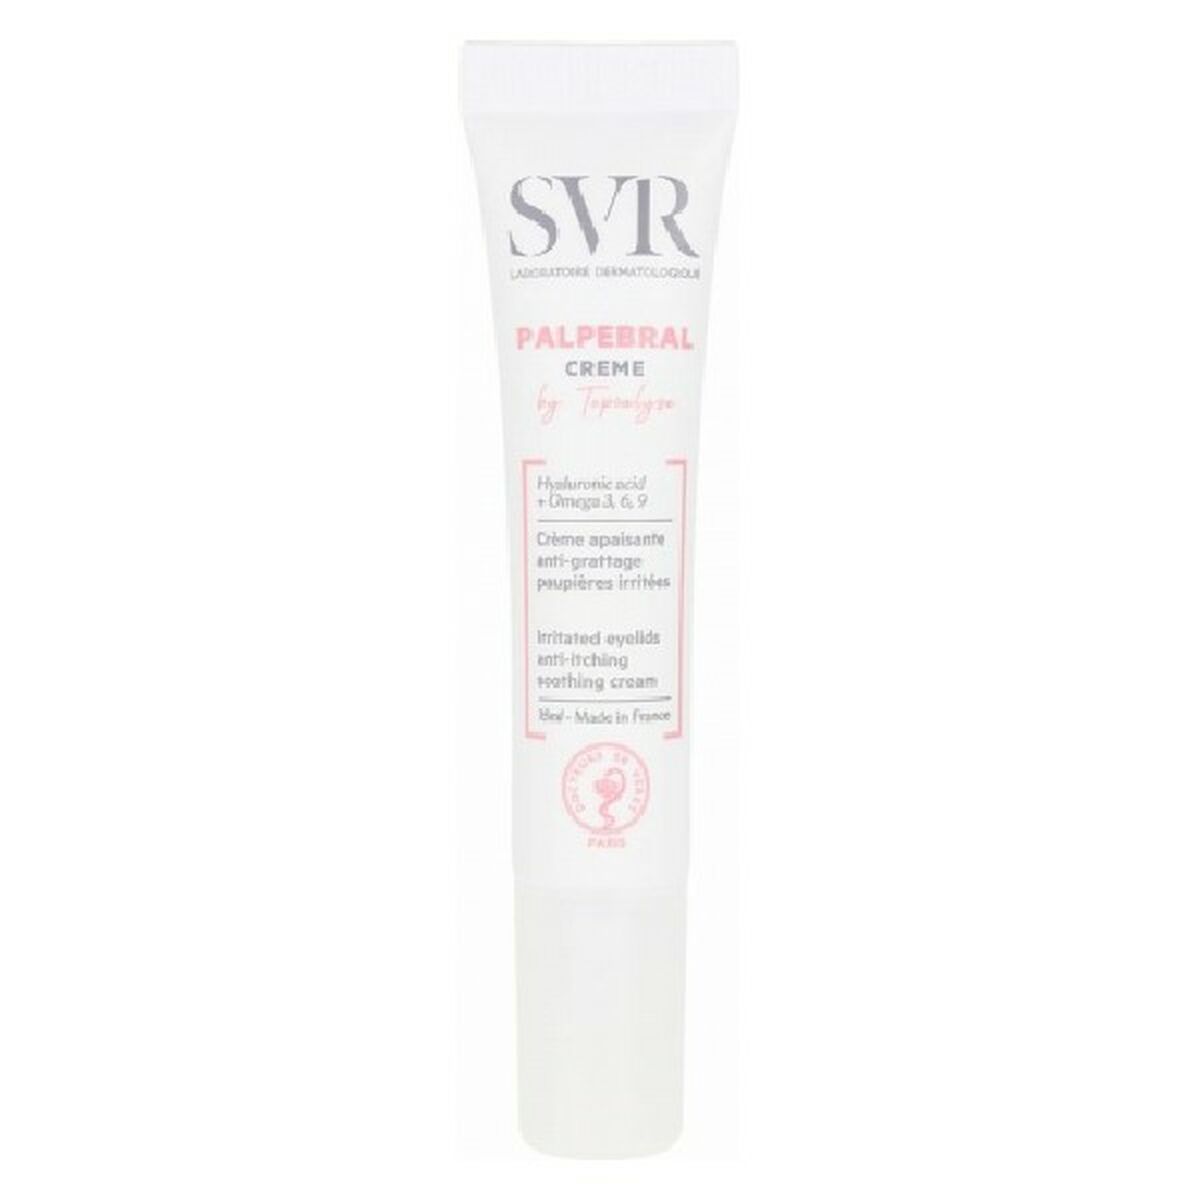 Cream for Eye Area SVR Topialyse 15 ml